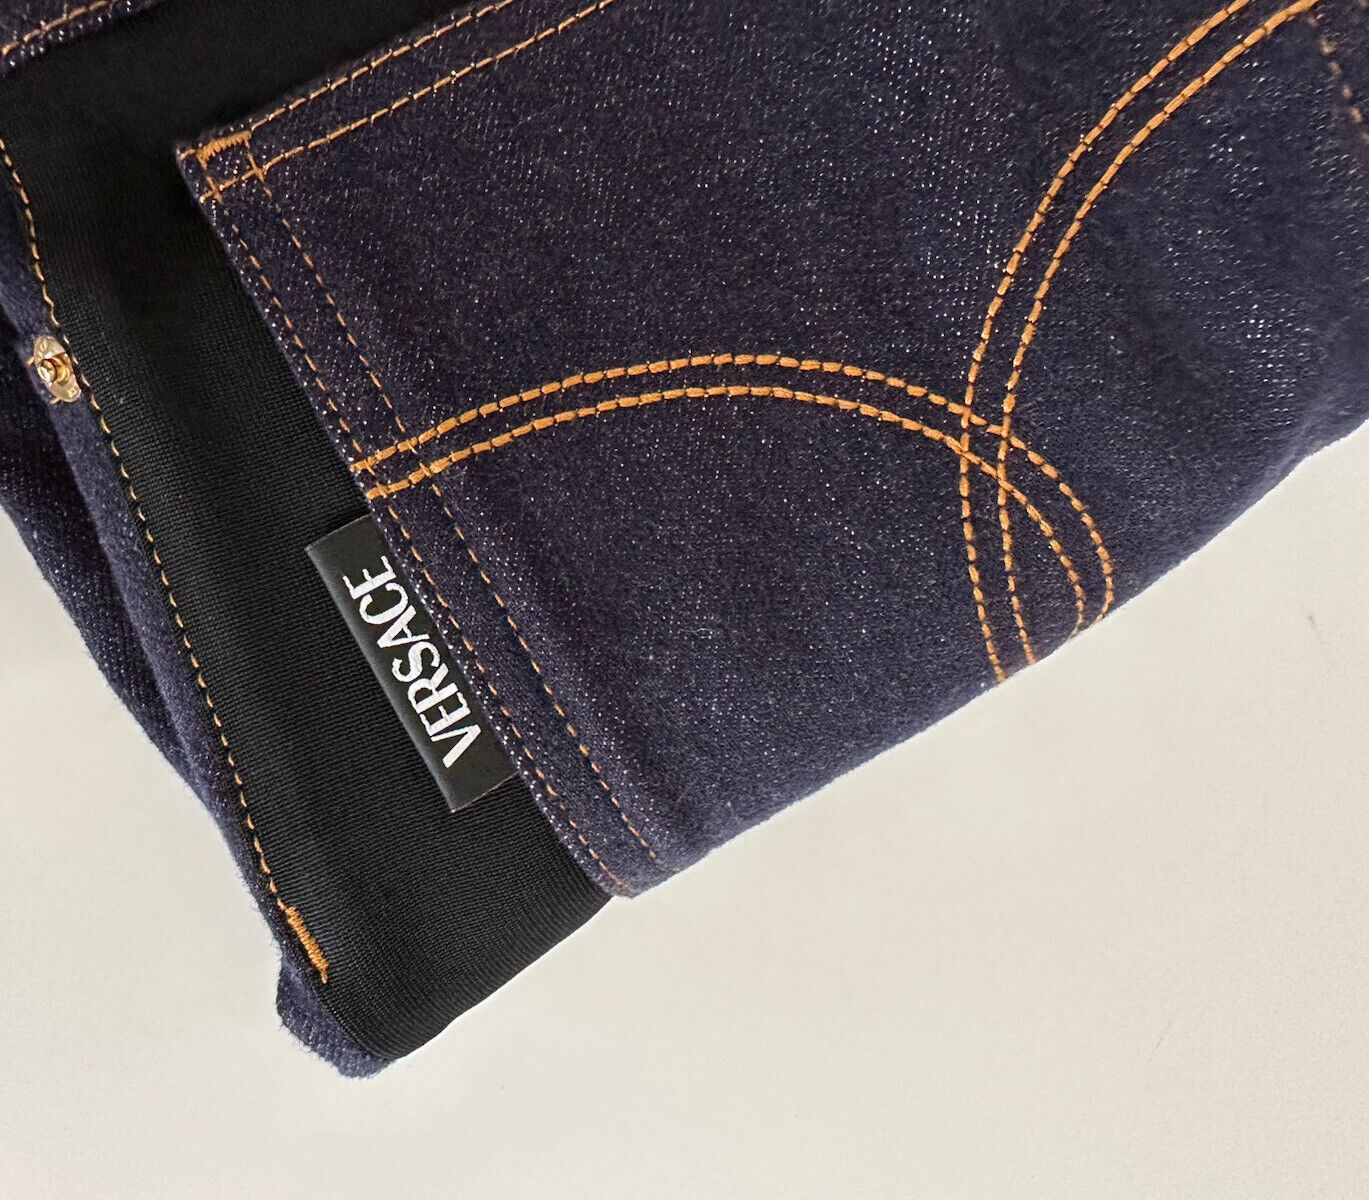 Женские синие джинсы Versace NWT, 925 долларов, размер 27, США, 1003998, сделано в Италии.